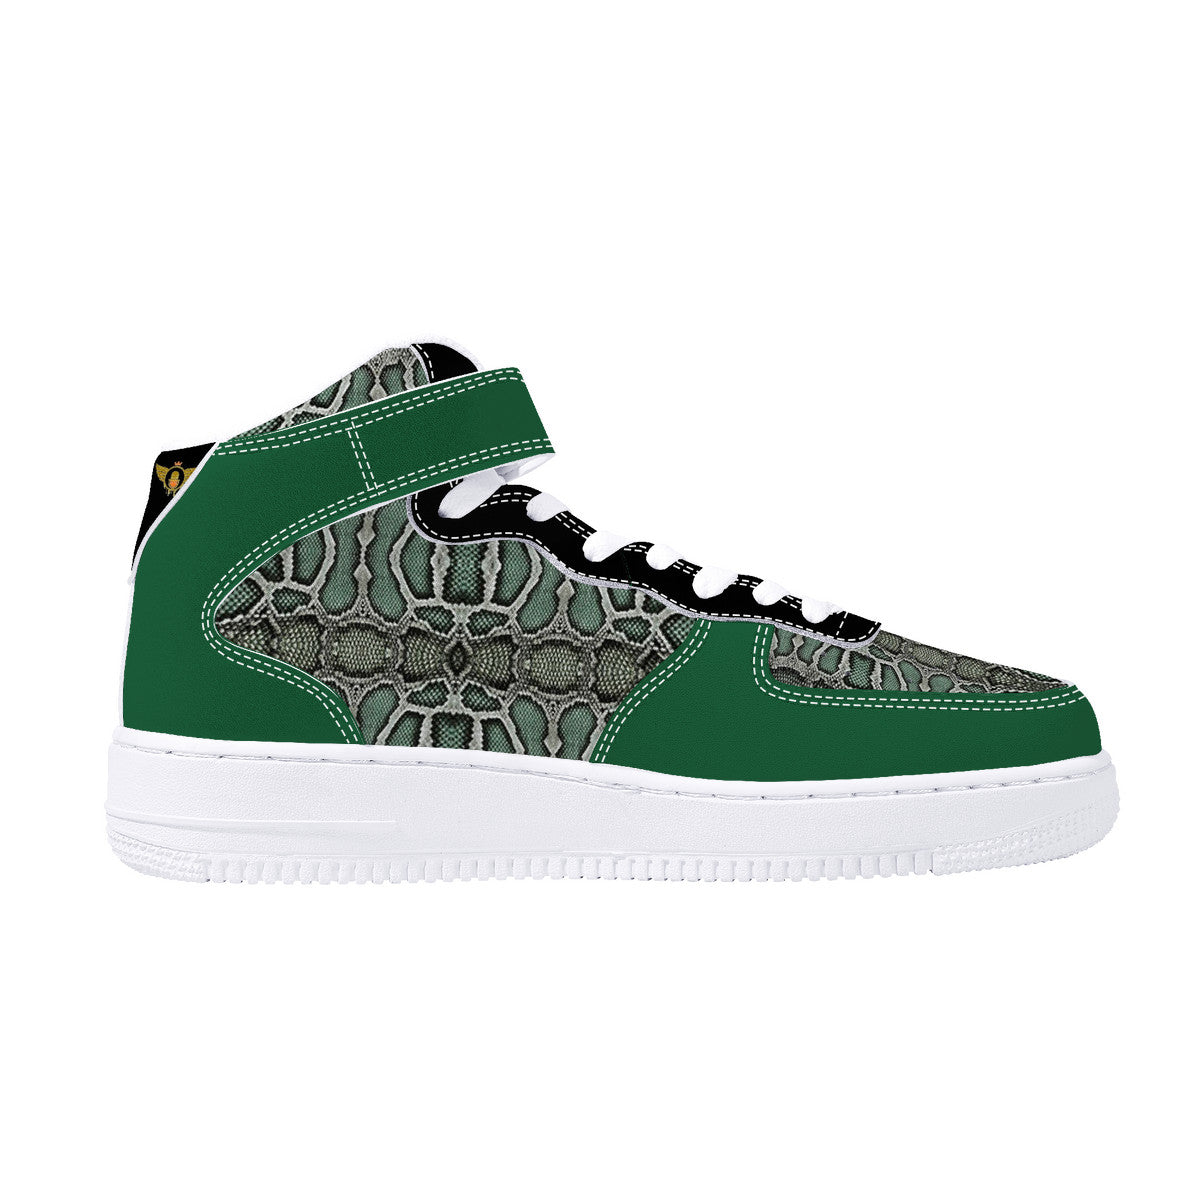 Majestic Green | High Top Customized | Shoe Zero